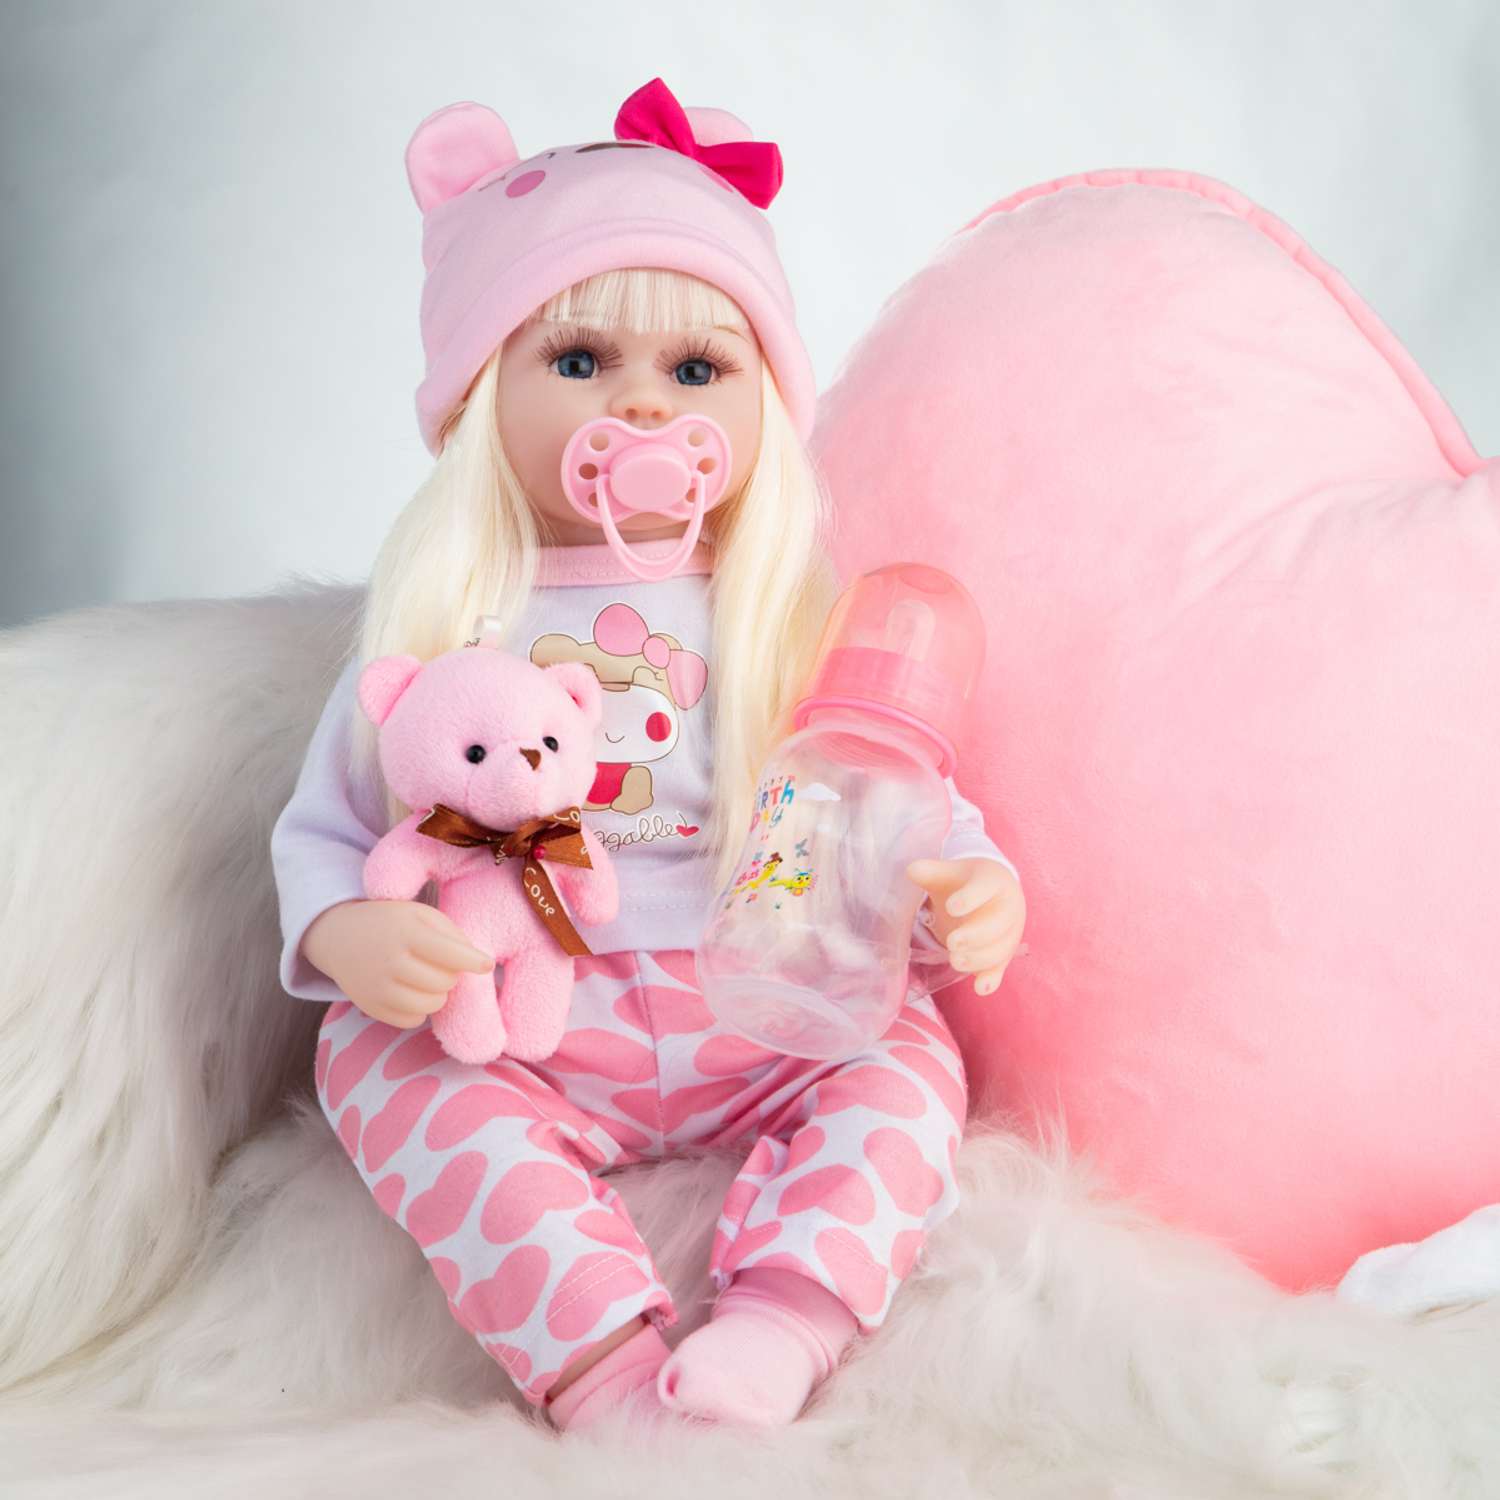 Почему так пугают, но при этом пользуются популярностью куклы реборн - точные копии младенцев